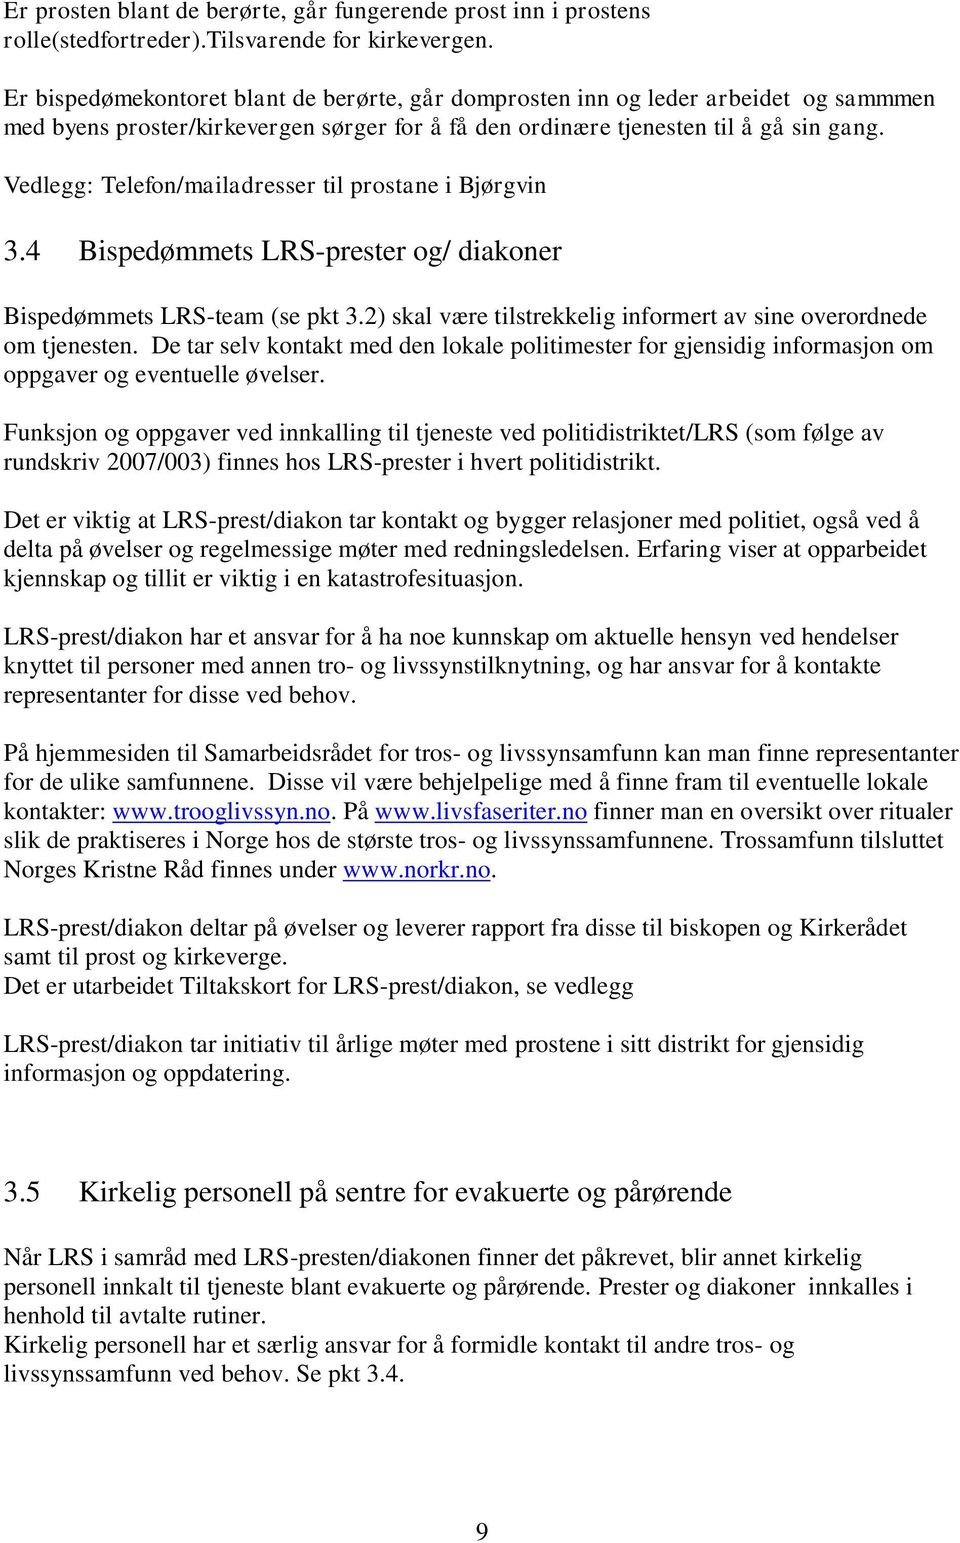 Vedlegg: Telefon/mailadresser til prostane i Bjørgvin 3.4 Bispedømmets LRS-prester og/ diakoner Bispedømmets LRS-team (se pkt 3.2) skal være tilstrekkelig informert av sine overordnede om tjenesten.